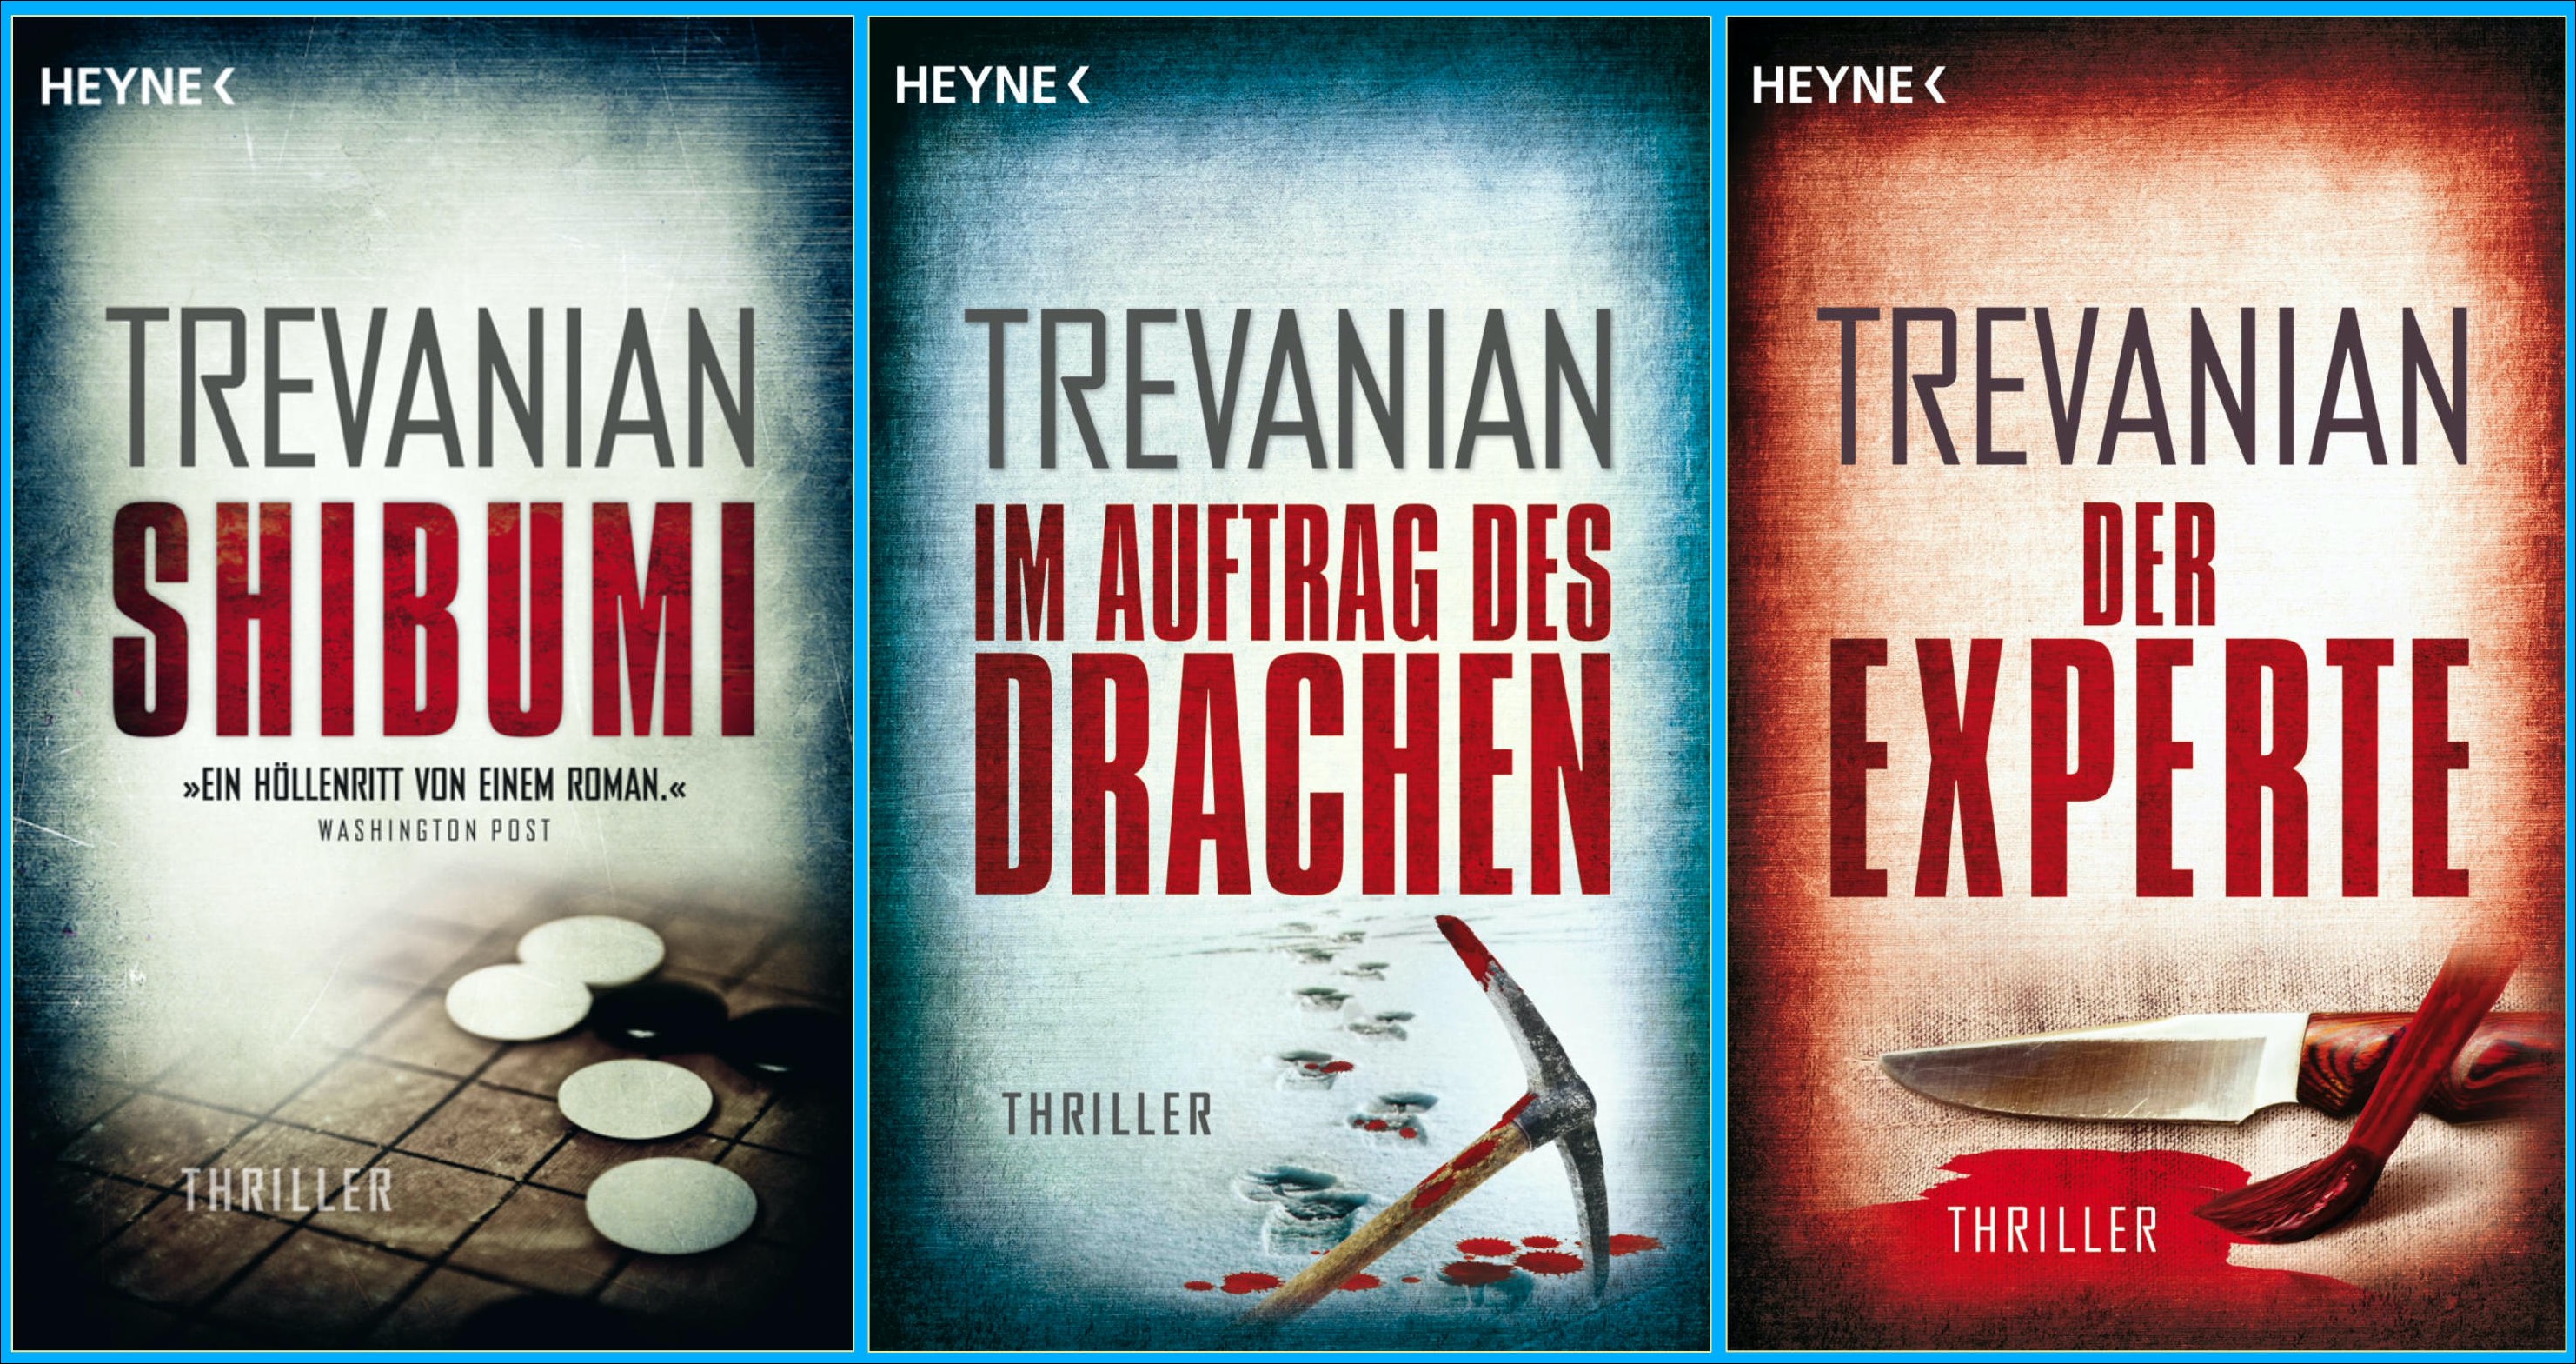 Die Cover-Bilder der drei Trevanian-Romane